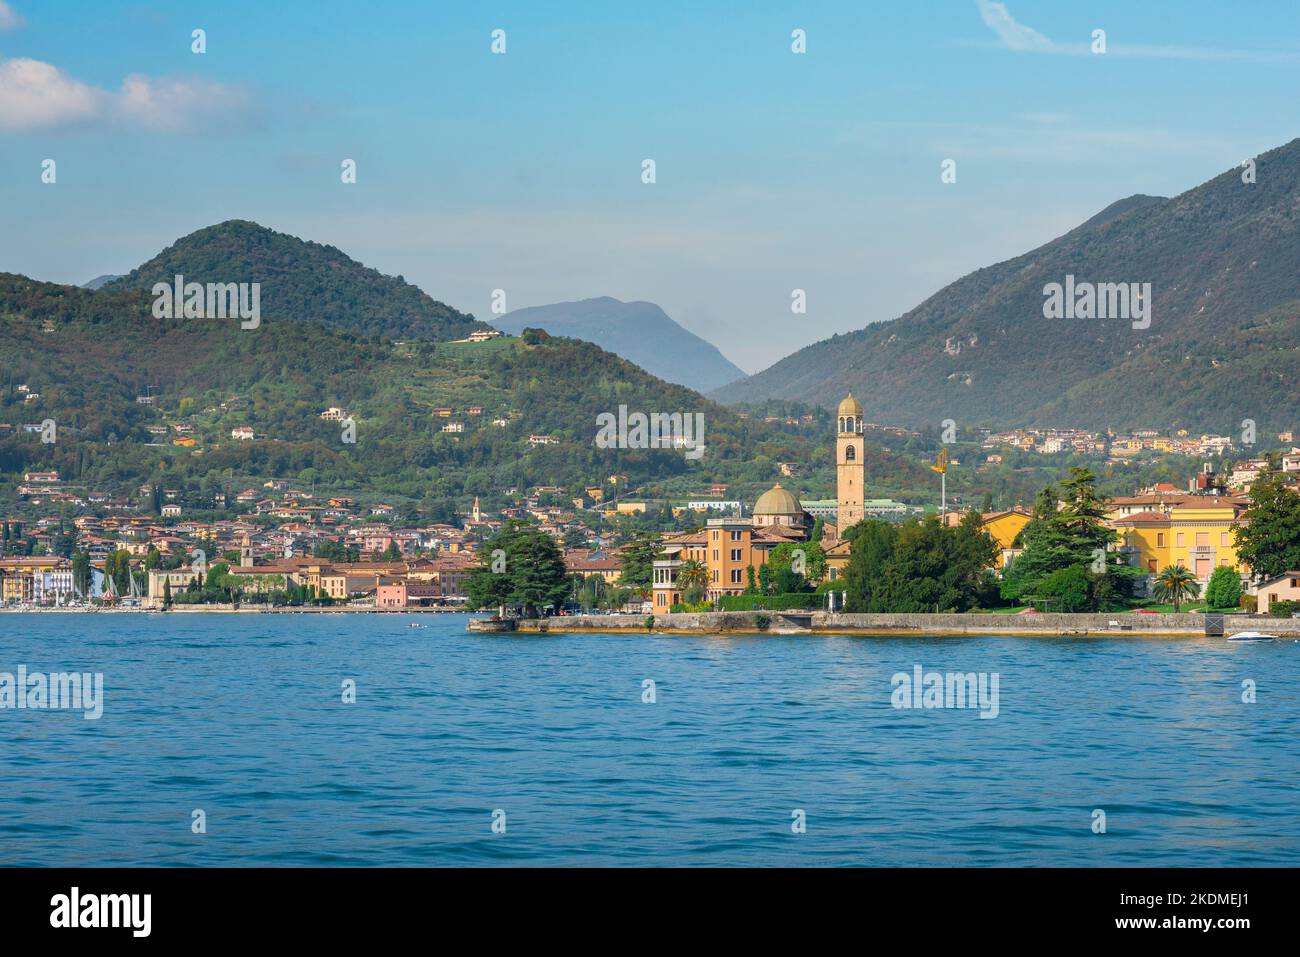 Lombardia Italia, vista in estate della panoramica cittadina lacustre di Salo situata sul versante sud-occidentale del Lago di Garda, Lombardia, Italia Foto Stock